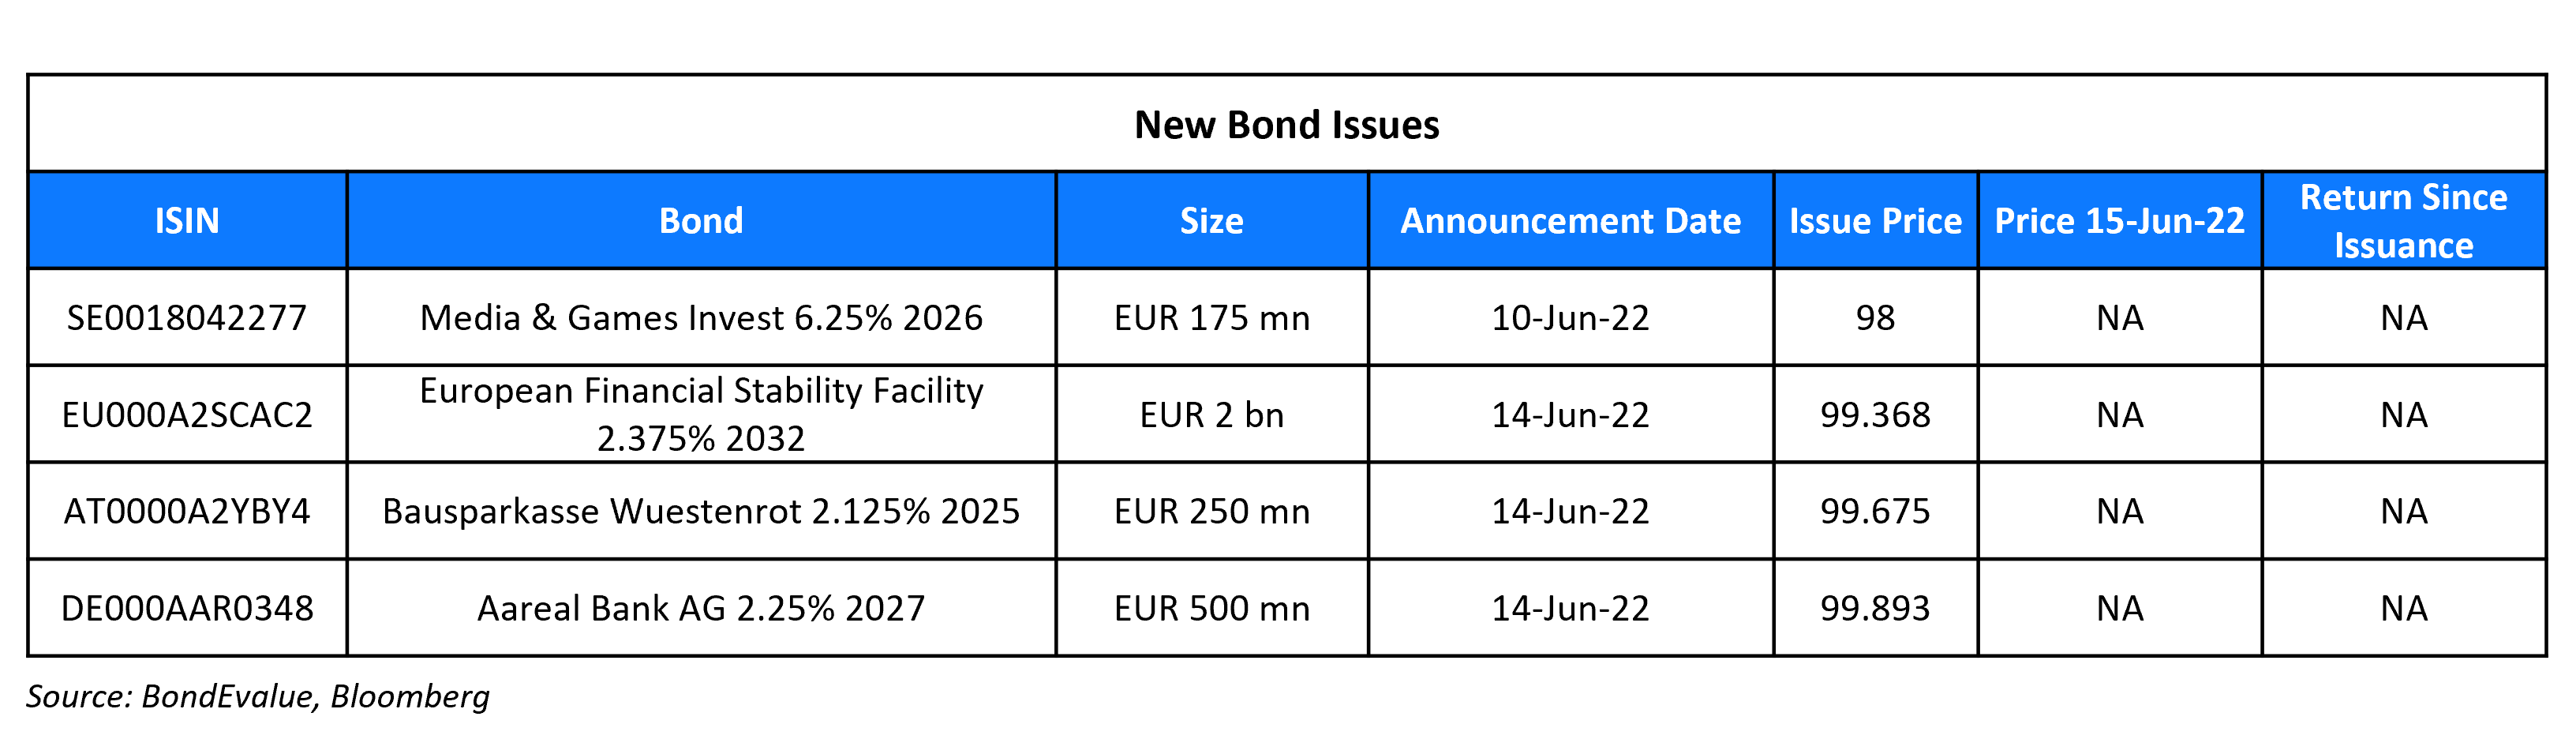 New Bond Issues 15 Jun 22